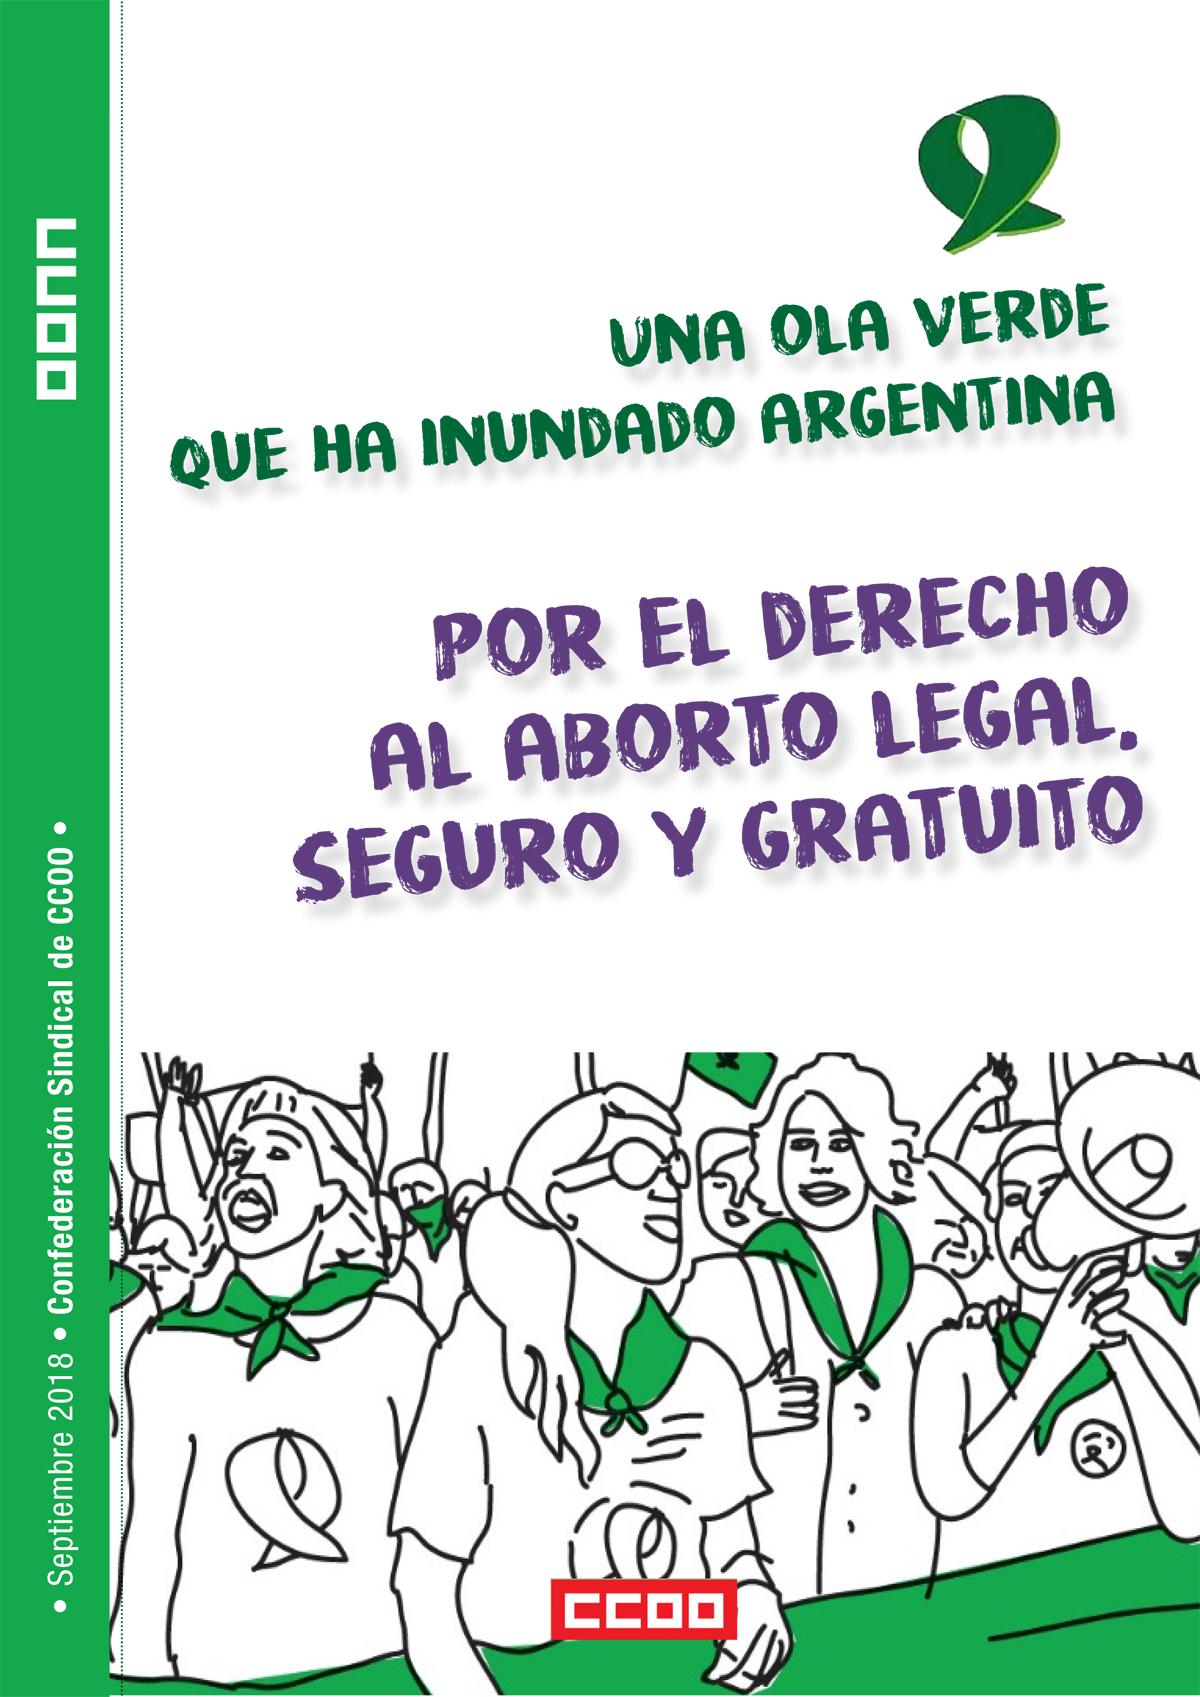 Una ola verde que ha inundado argentina por el derecho al aborto legal, seguro y gratuito